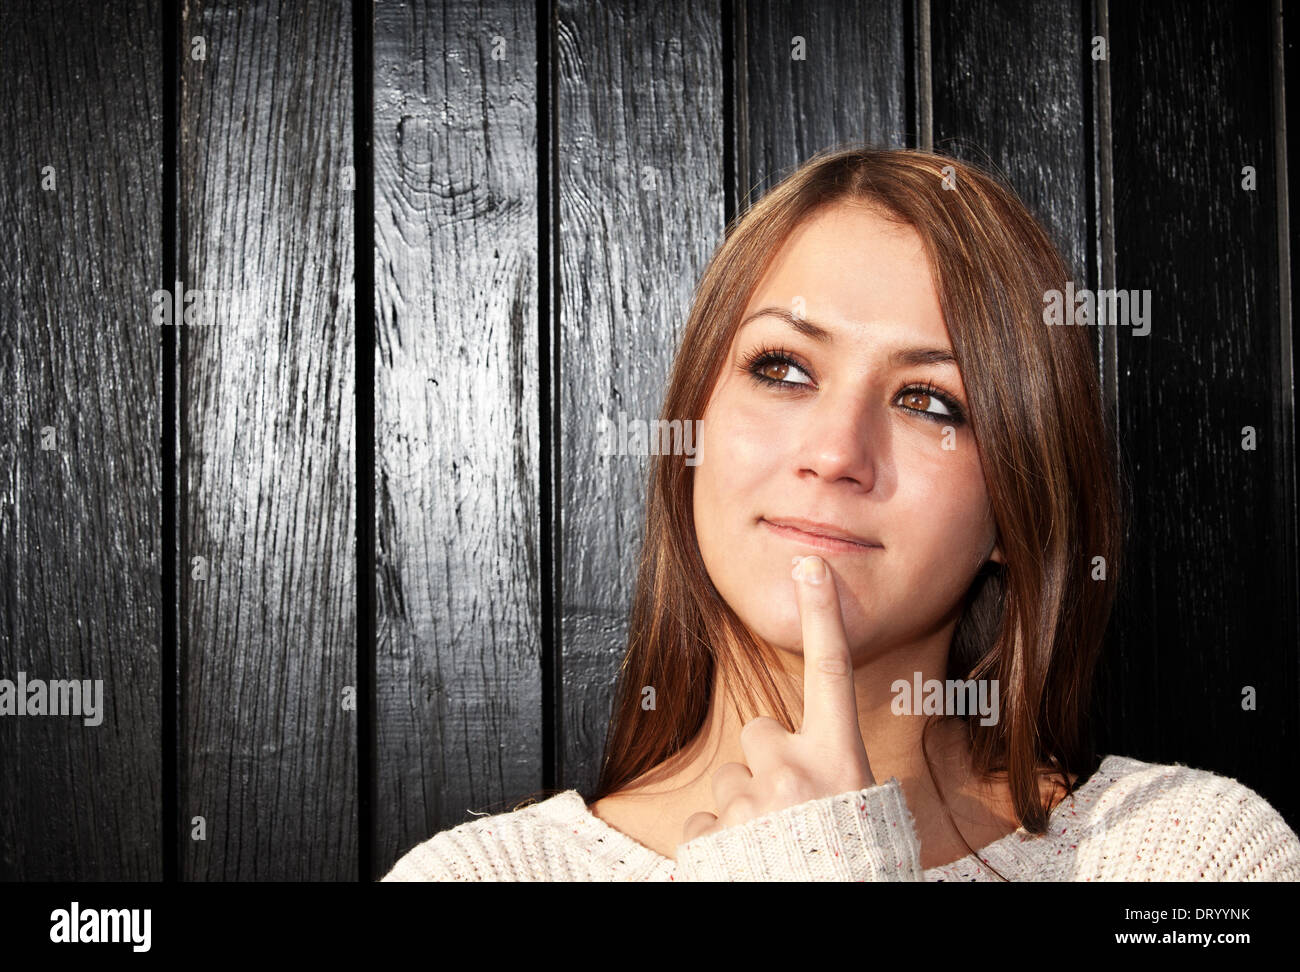 Attractive woman deliberates decision. Stock Photo